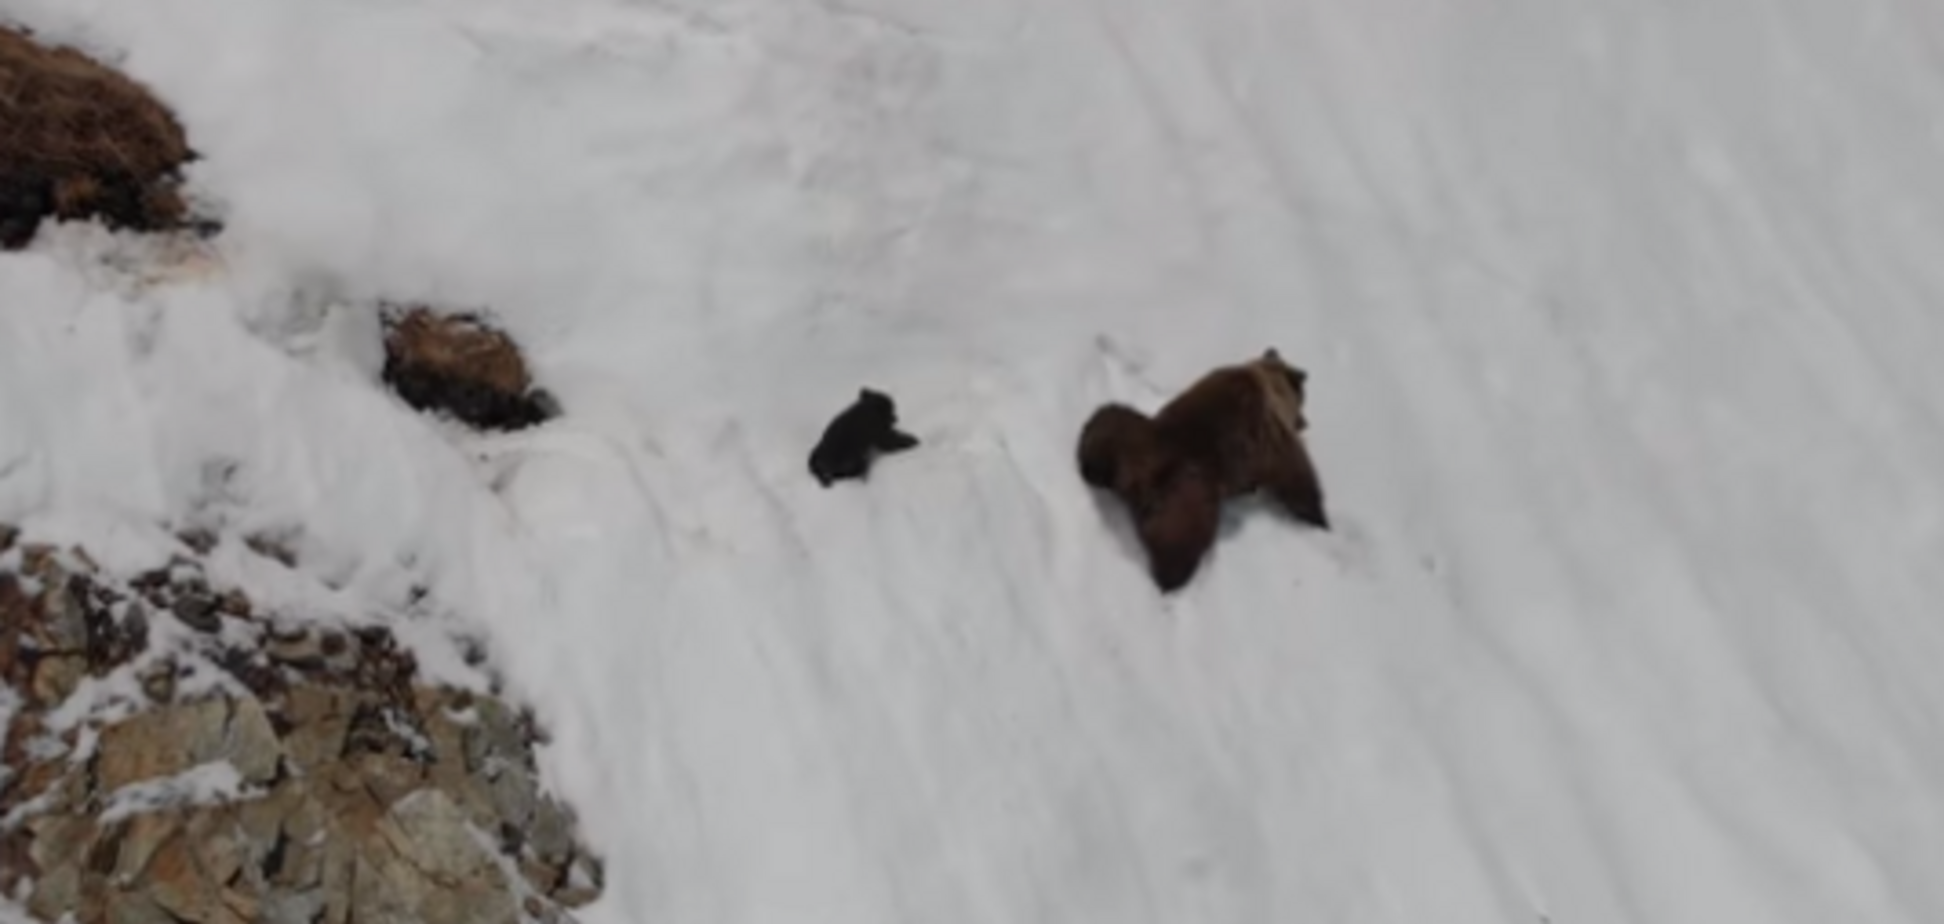  'Дятел с дроном': трогательное видео с падающим медвежонком вызвало волну гнева в сети